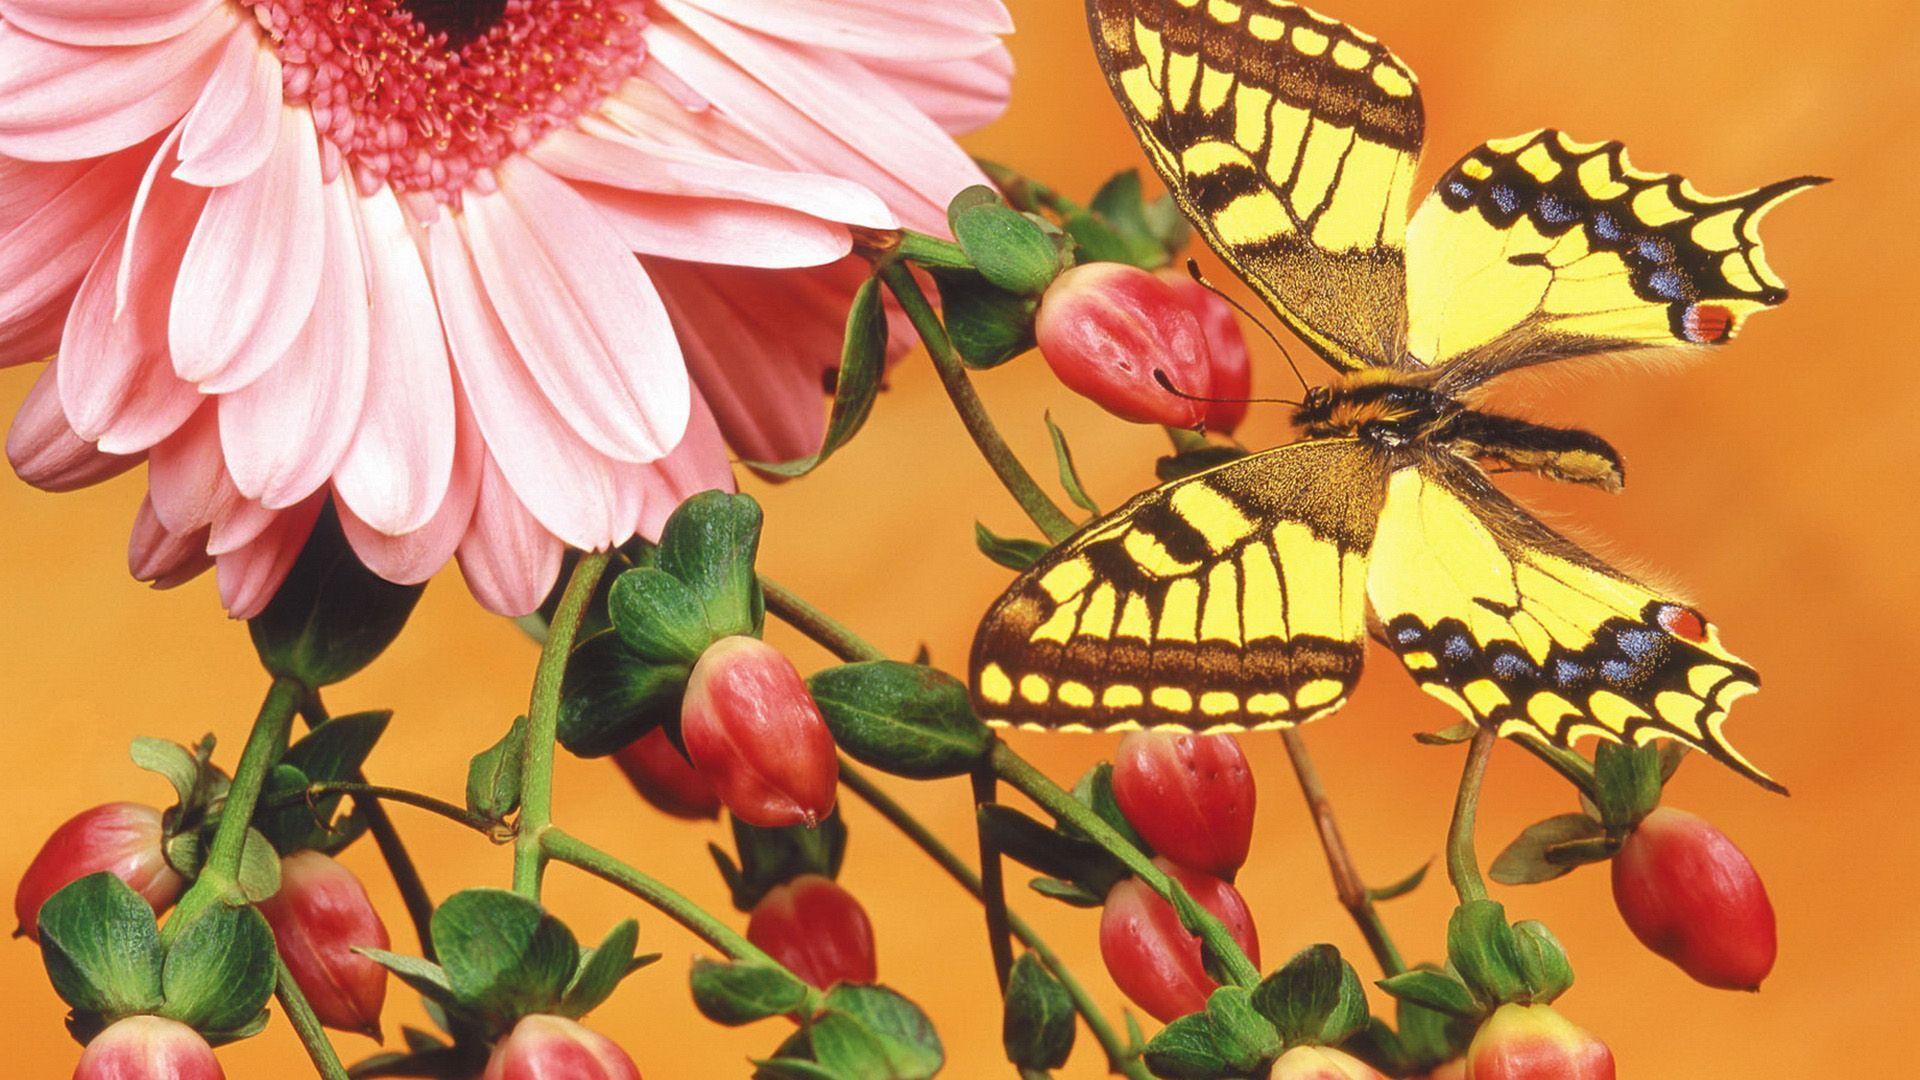 Butterfly Hypericum Berries Gerbera Daisy widescreen wallpaper. Wide